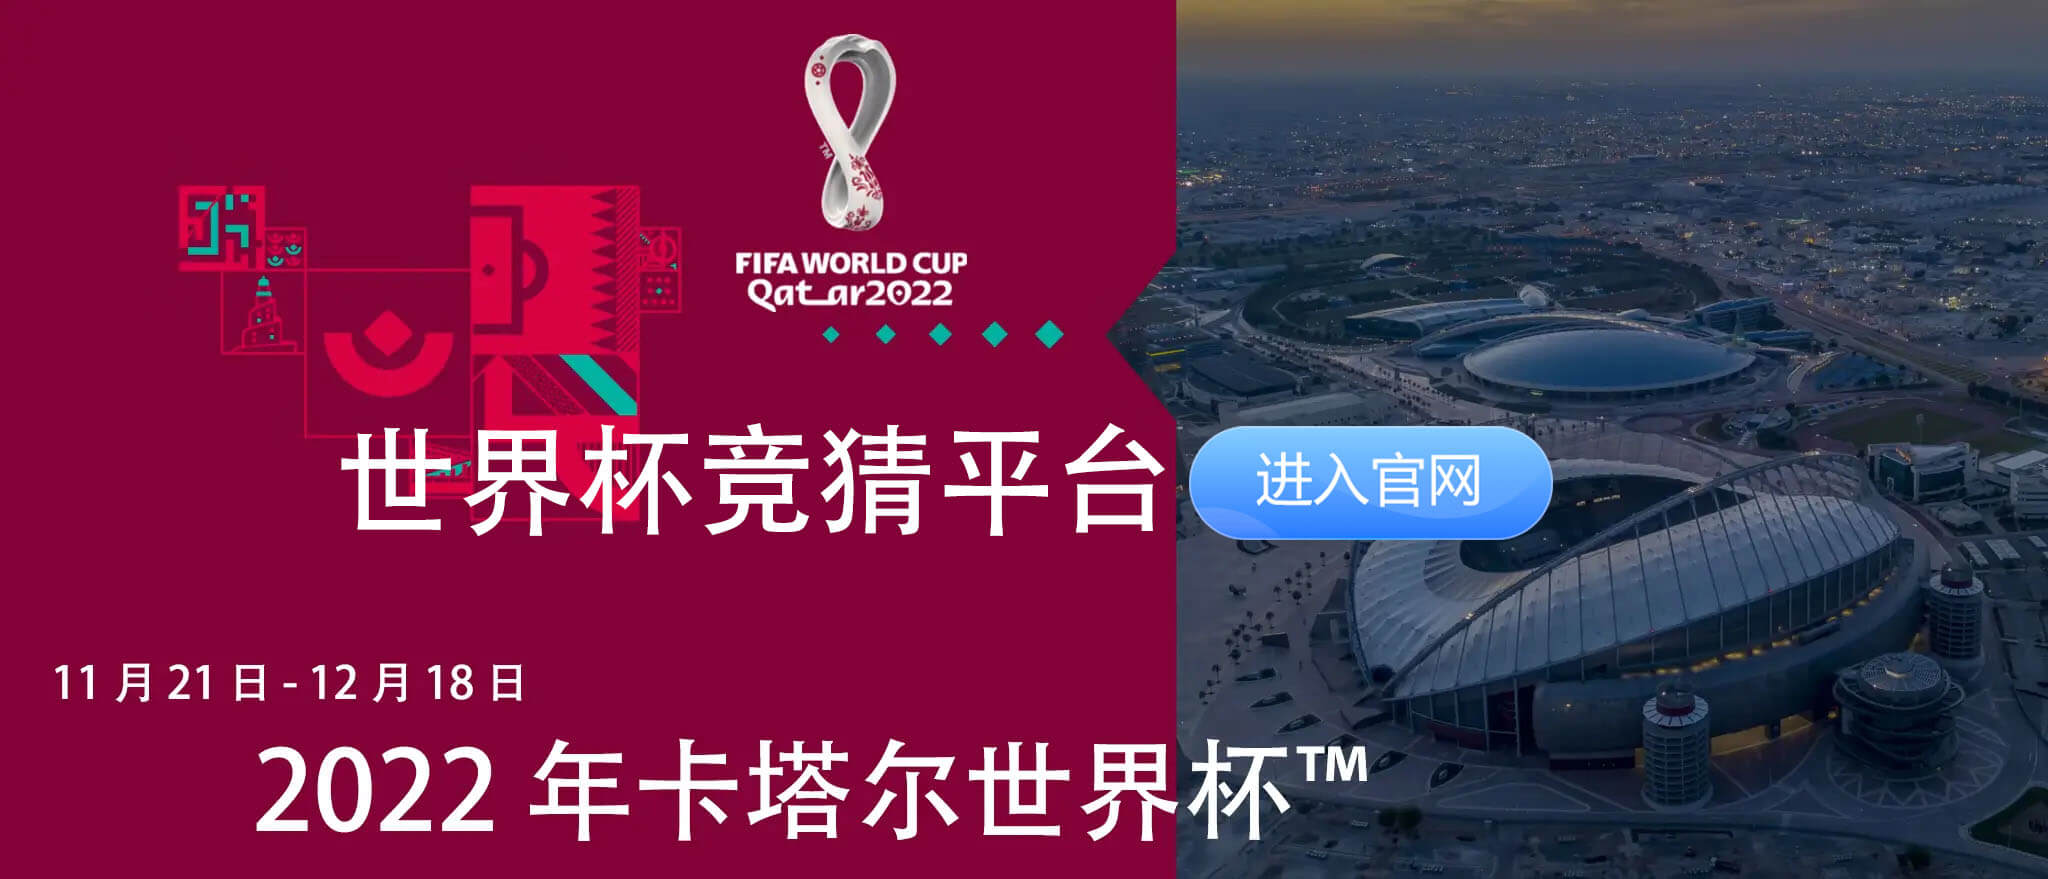 卡塔尔世界杯，今日开幕！揭幕战，万众瞩目